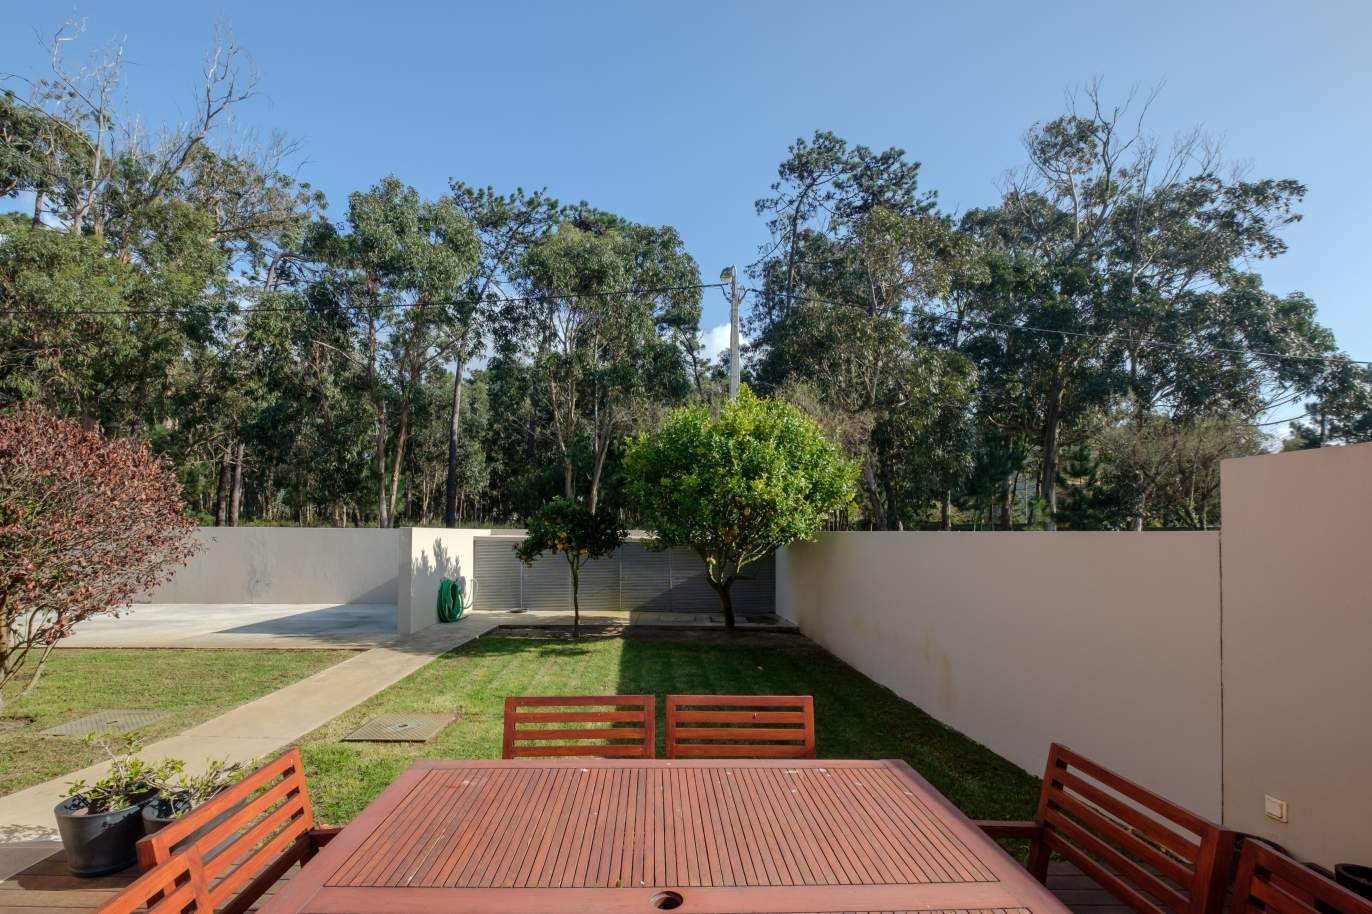 Villa de lujo en venta con jardín y piscina, Lavra,Matosinhos,Portugal_126493